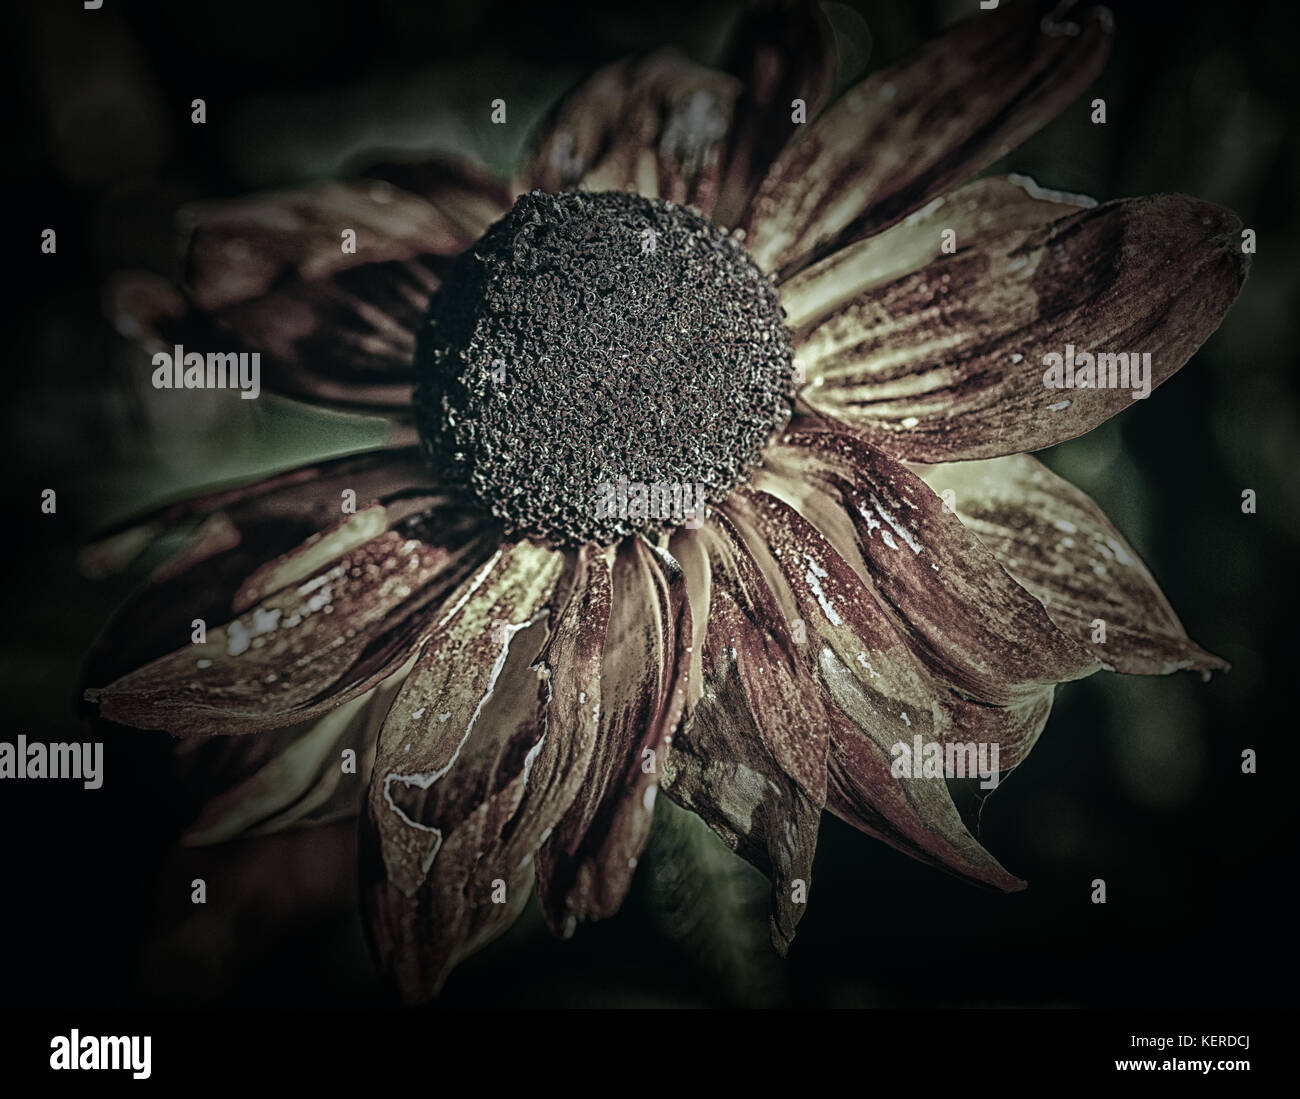 Evanescence mostrato dai fiori esaurito Foto Stock